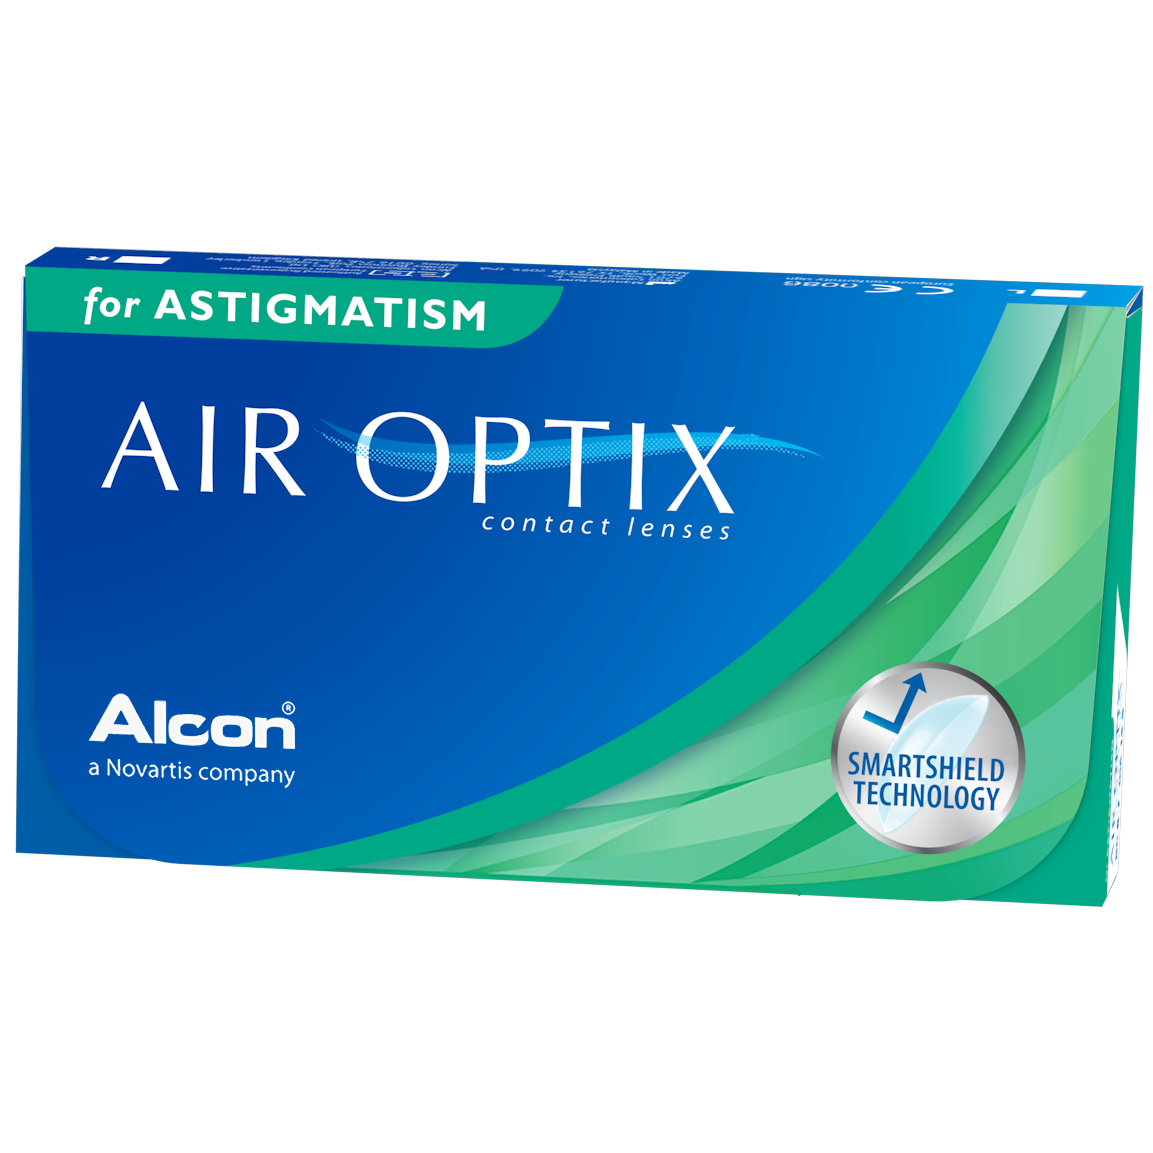 AIR OPTIX® for Astigmatism